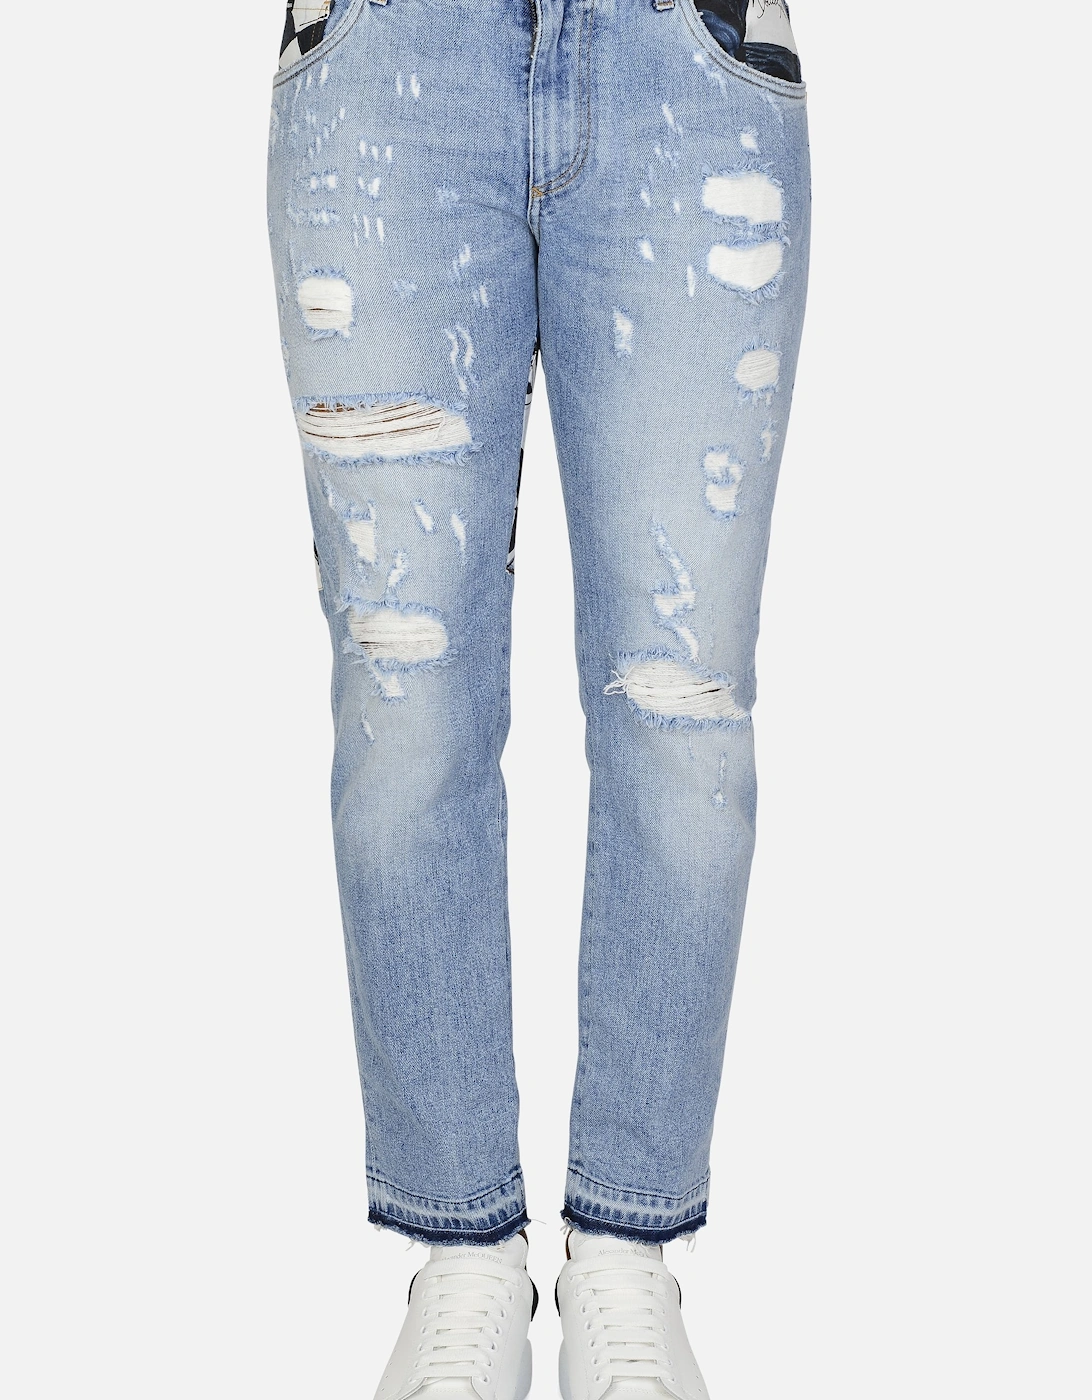 Vintaged Jeans, 9 of 8